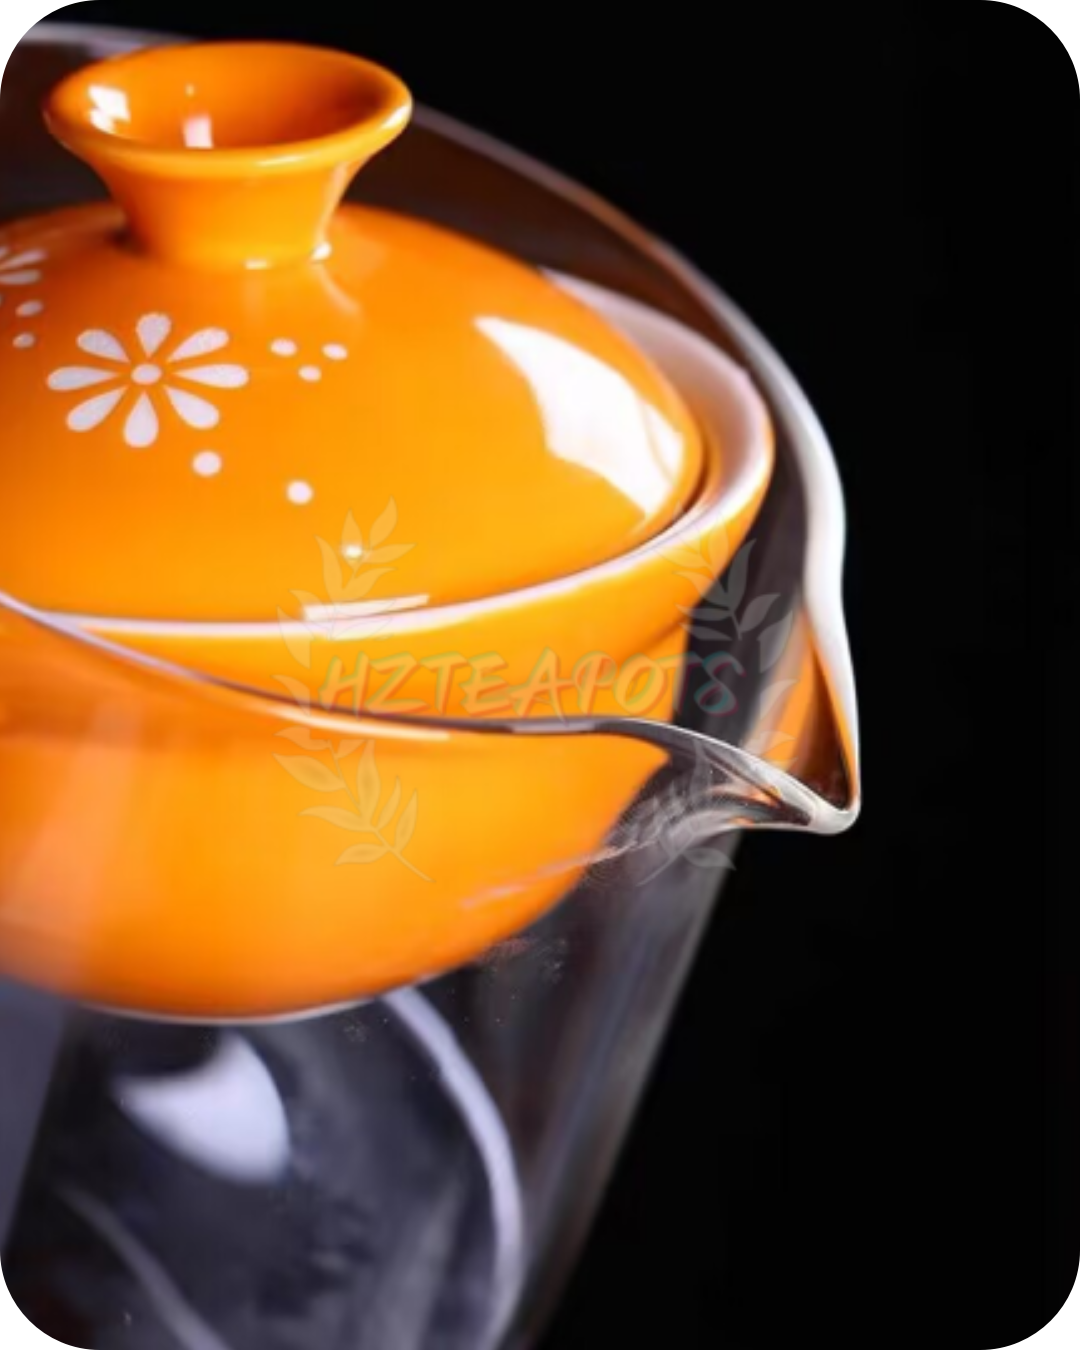 Zen Cup | HZTEAPOTS®